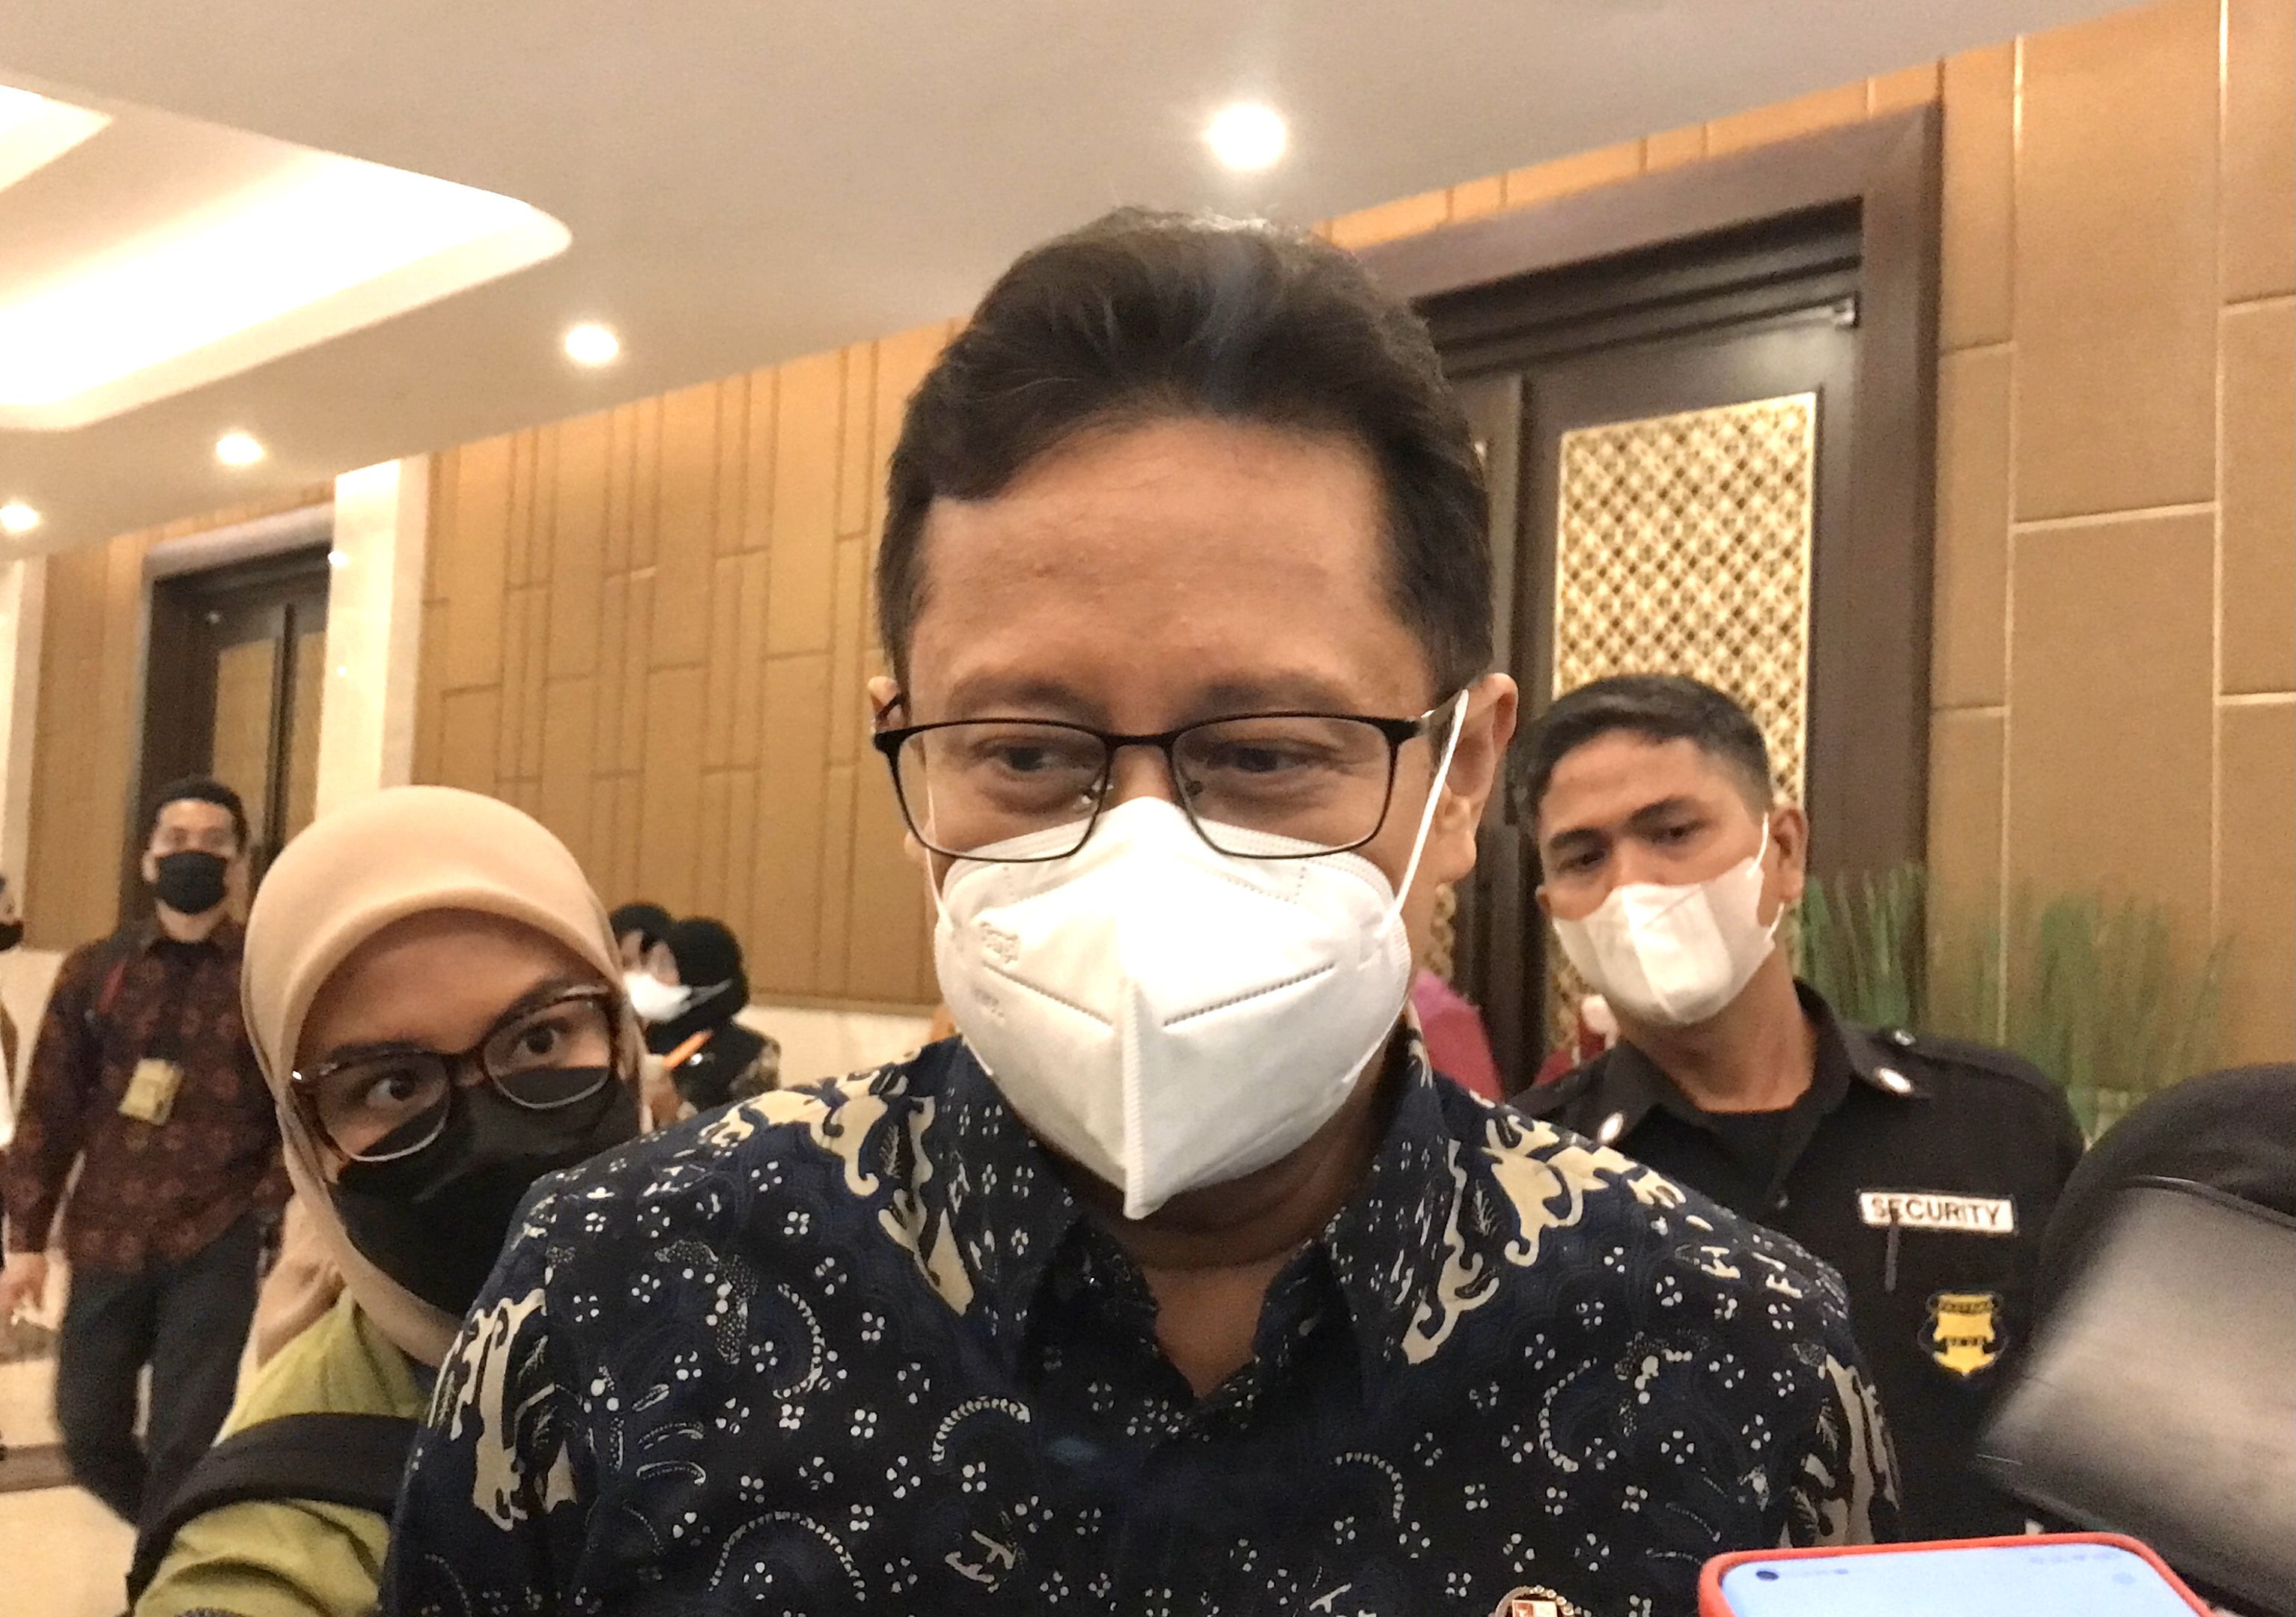 Kapal RS China Bakal Beri Pengobatan di Teluk Jakarta, Menkes: Diizinkan, tapi...